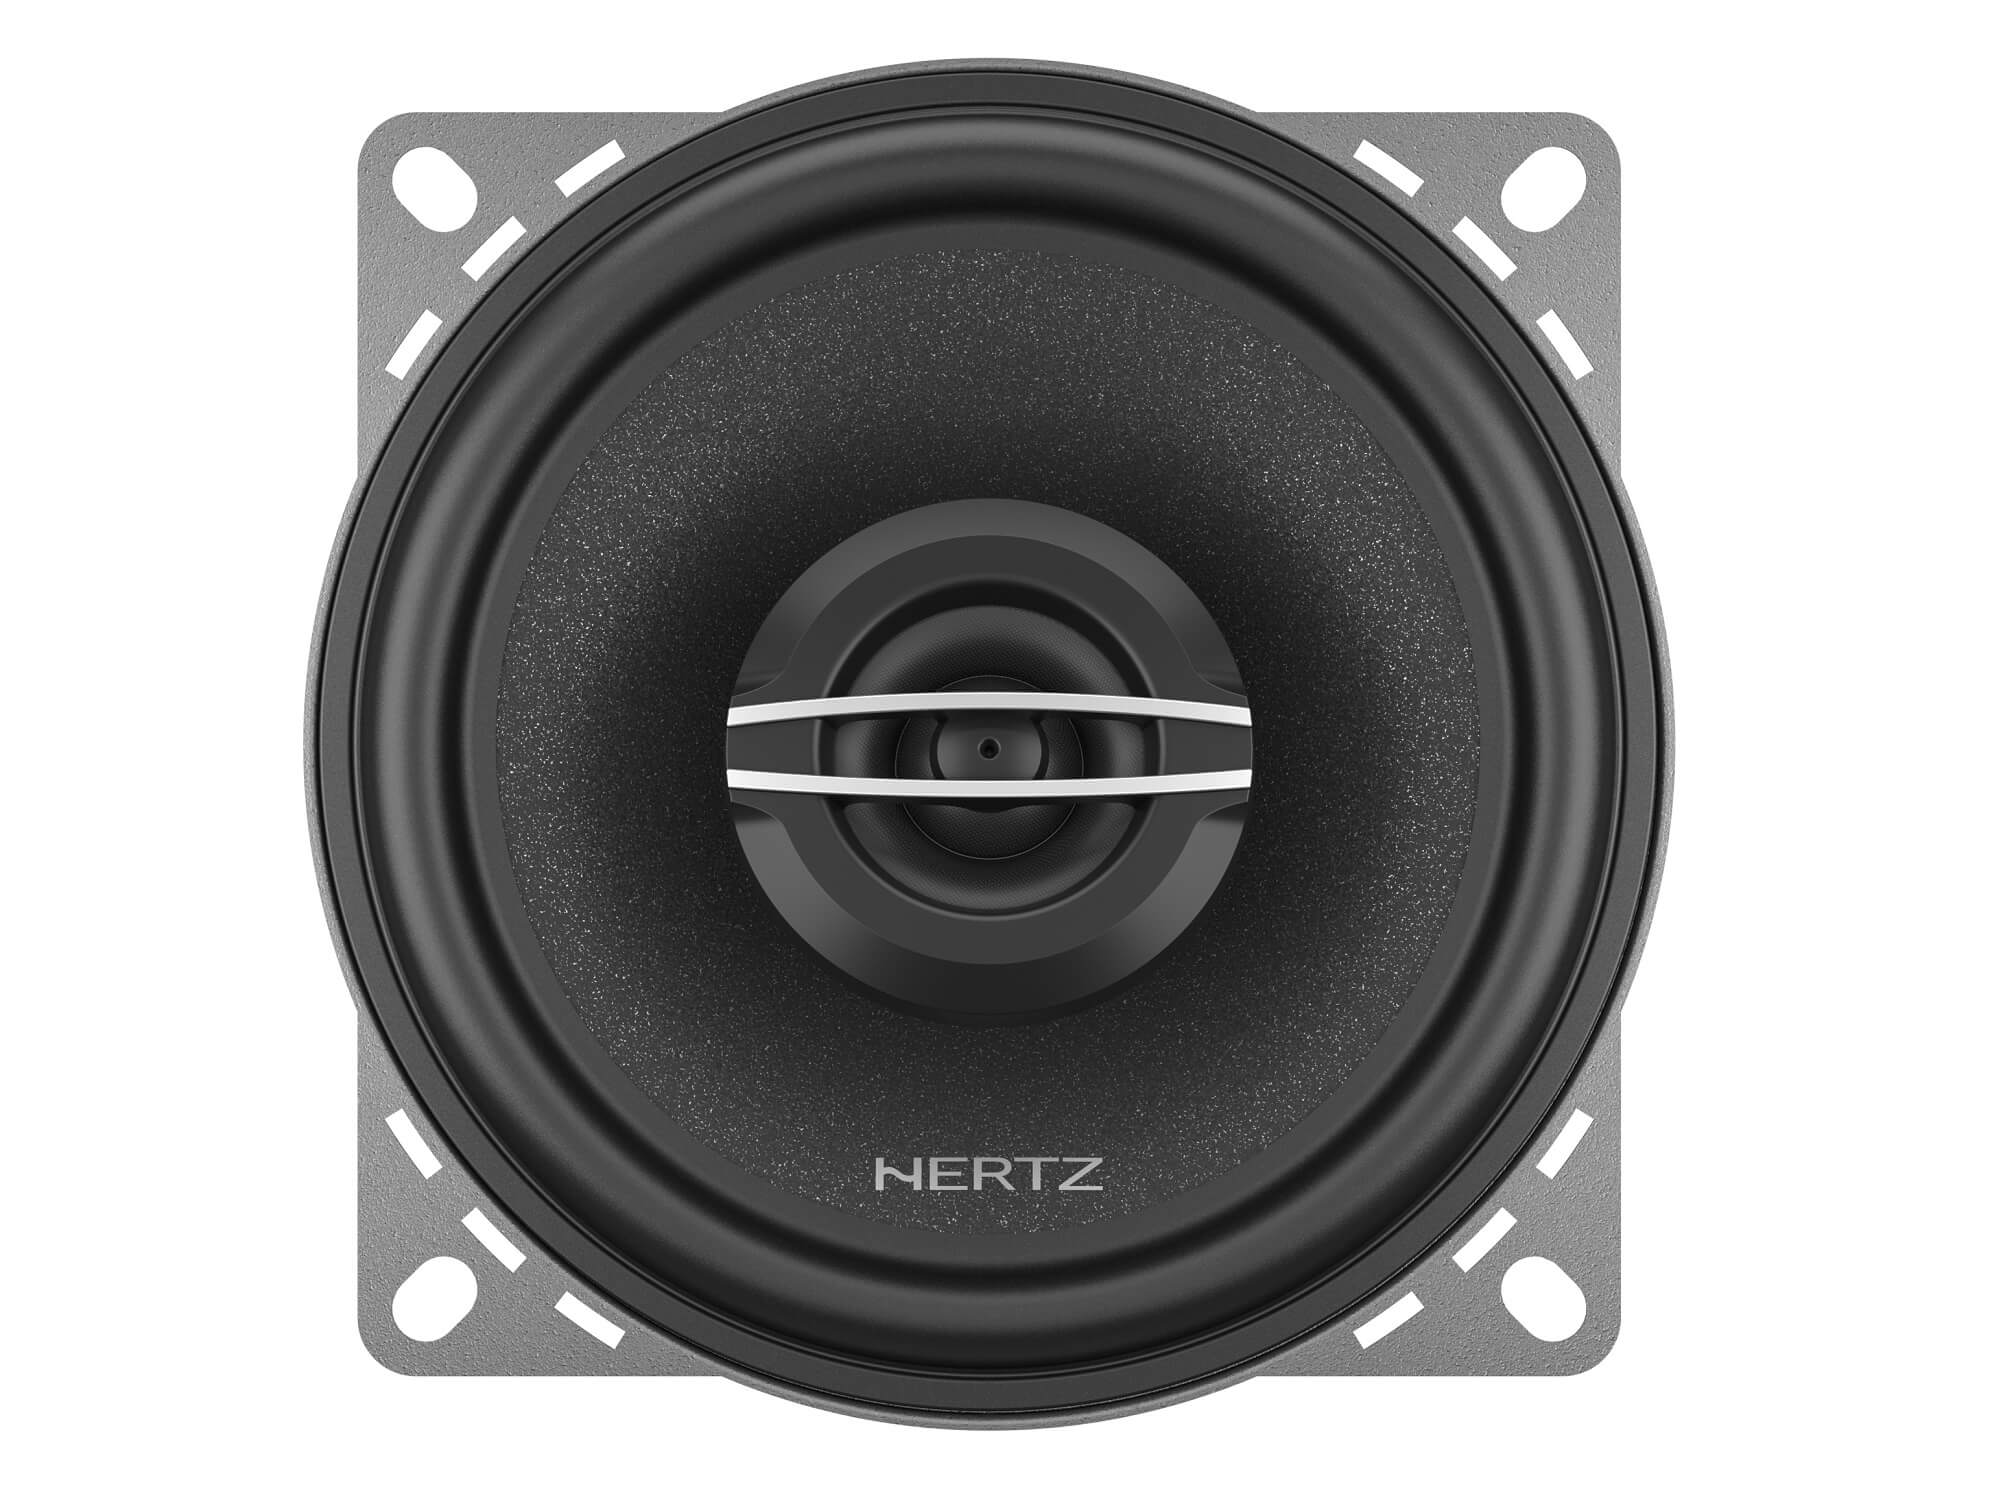 Hertz Cento CX 100 - Top